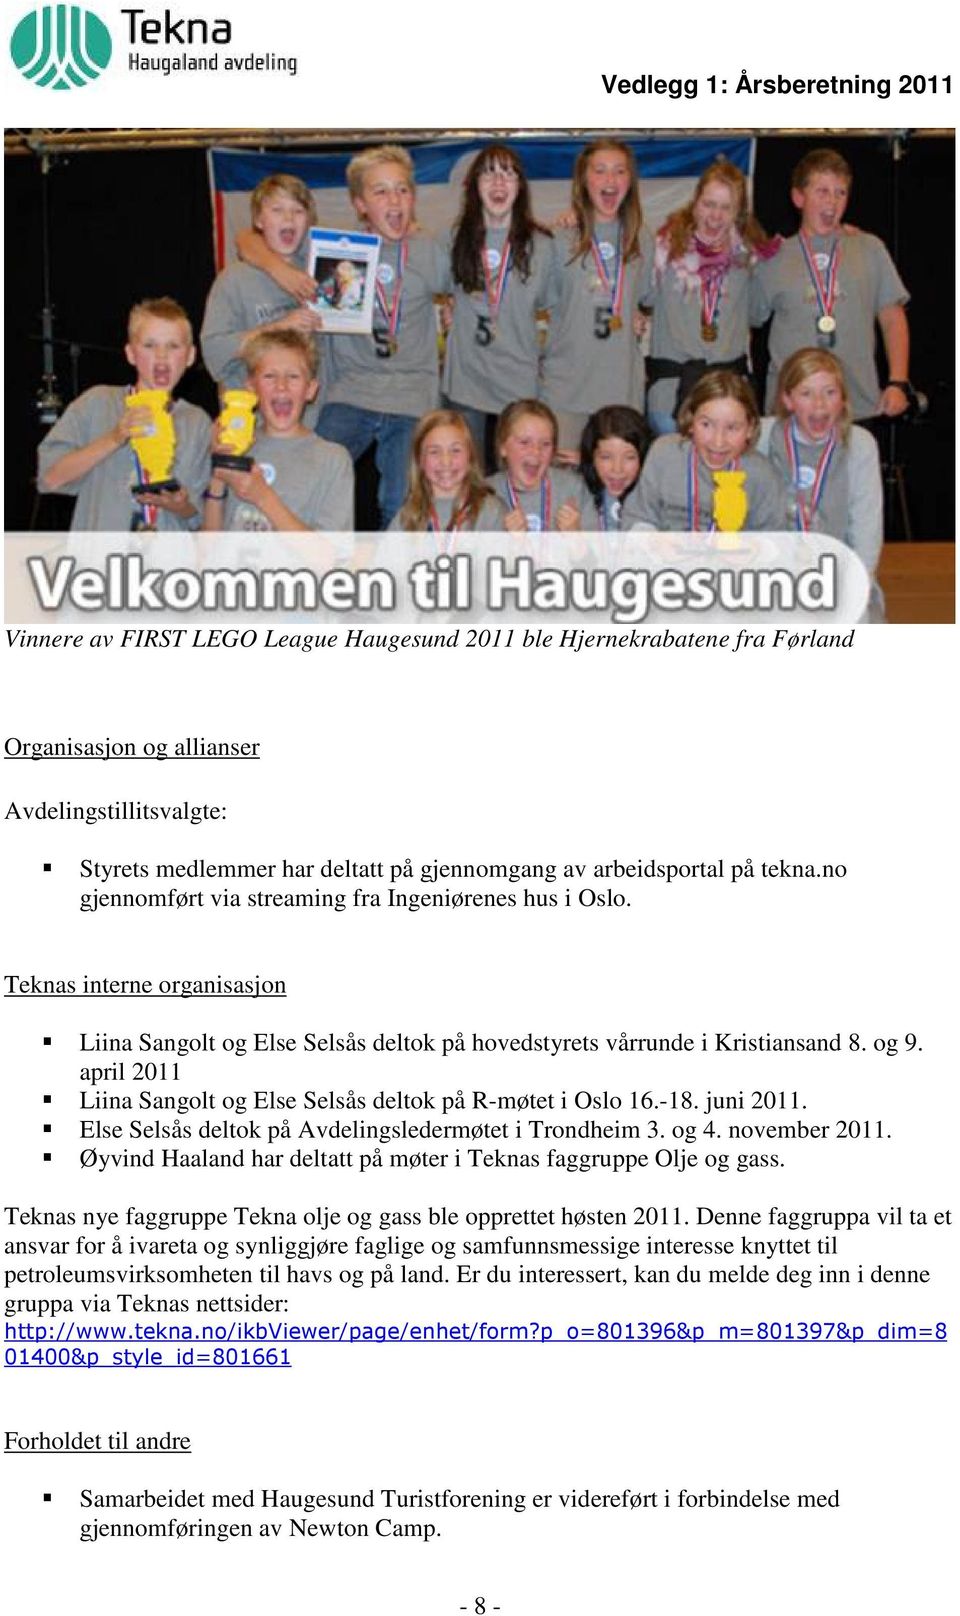 april 2011 Liina Sangolt og Else Selsås deltok på R-møtet i Oslo 16.-18. juni 2011. Else Selsås deltok på Avdelingsledermøtet i Trondheim 3. og 4. november 2011.